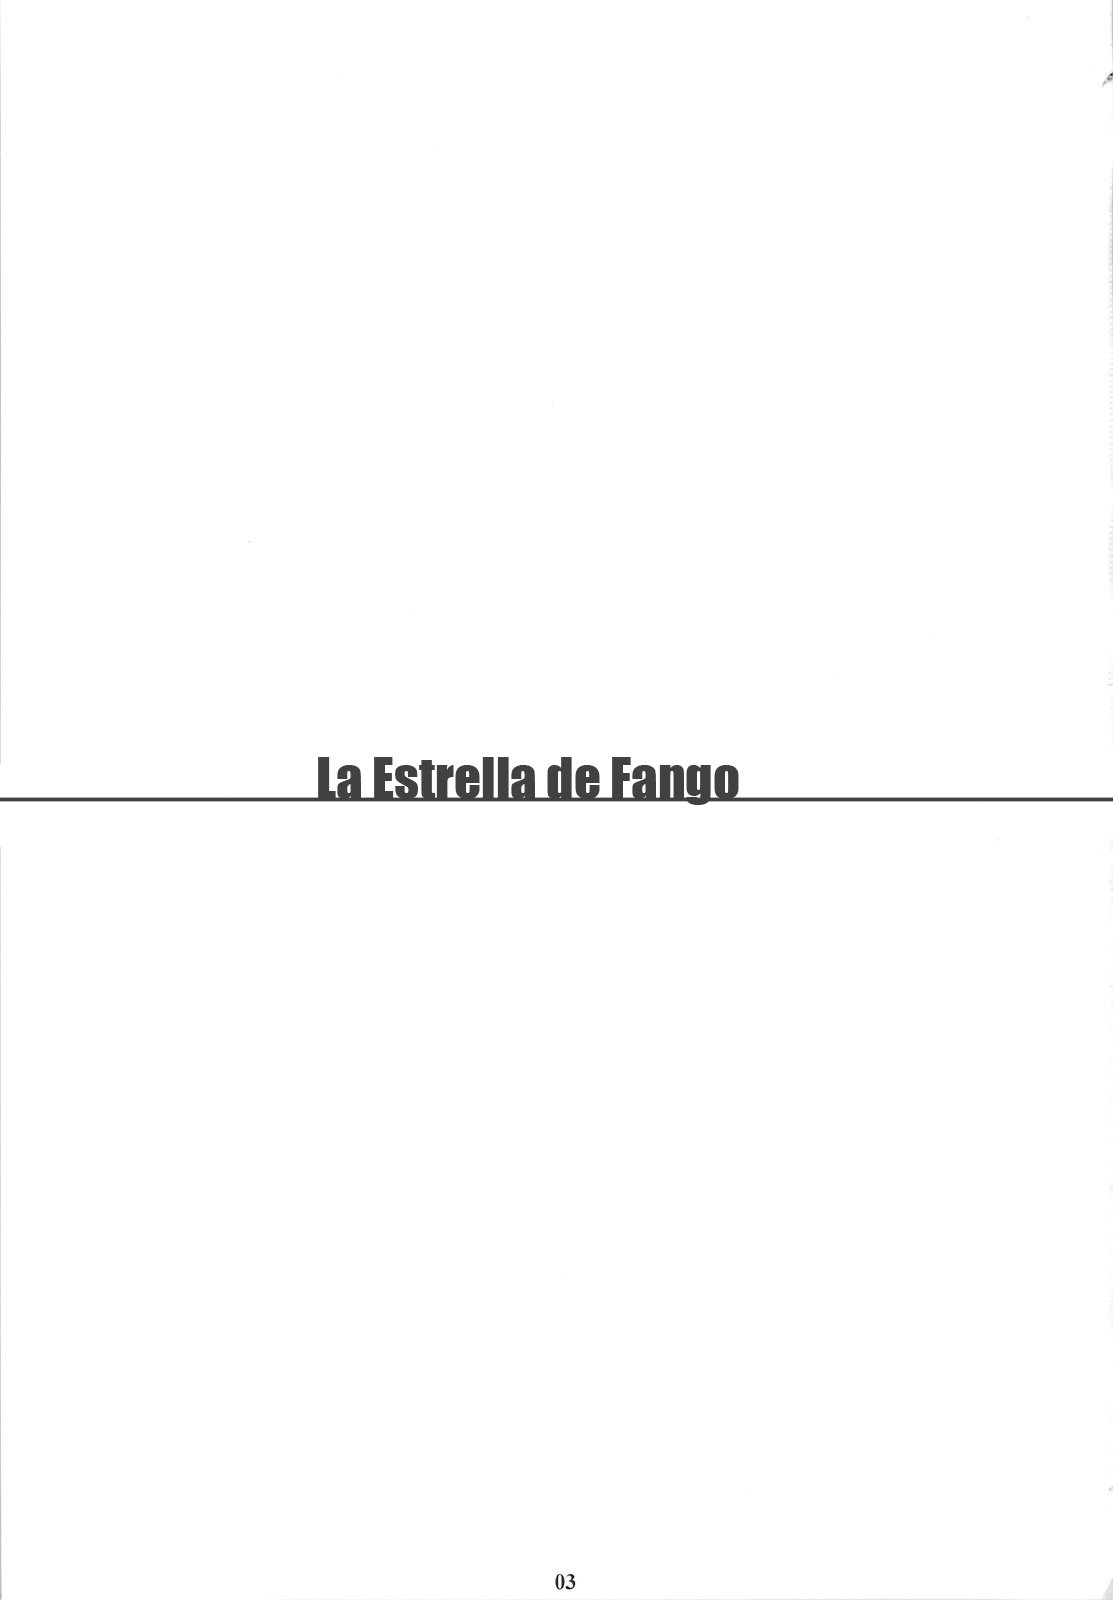 The muck star - La Estrella de Fango - 1